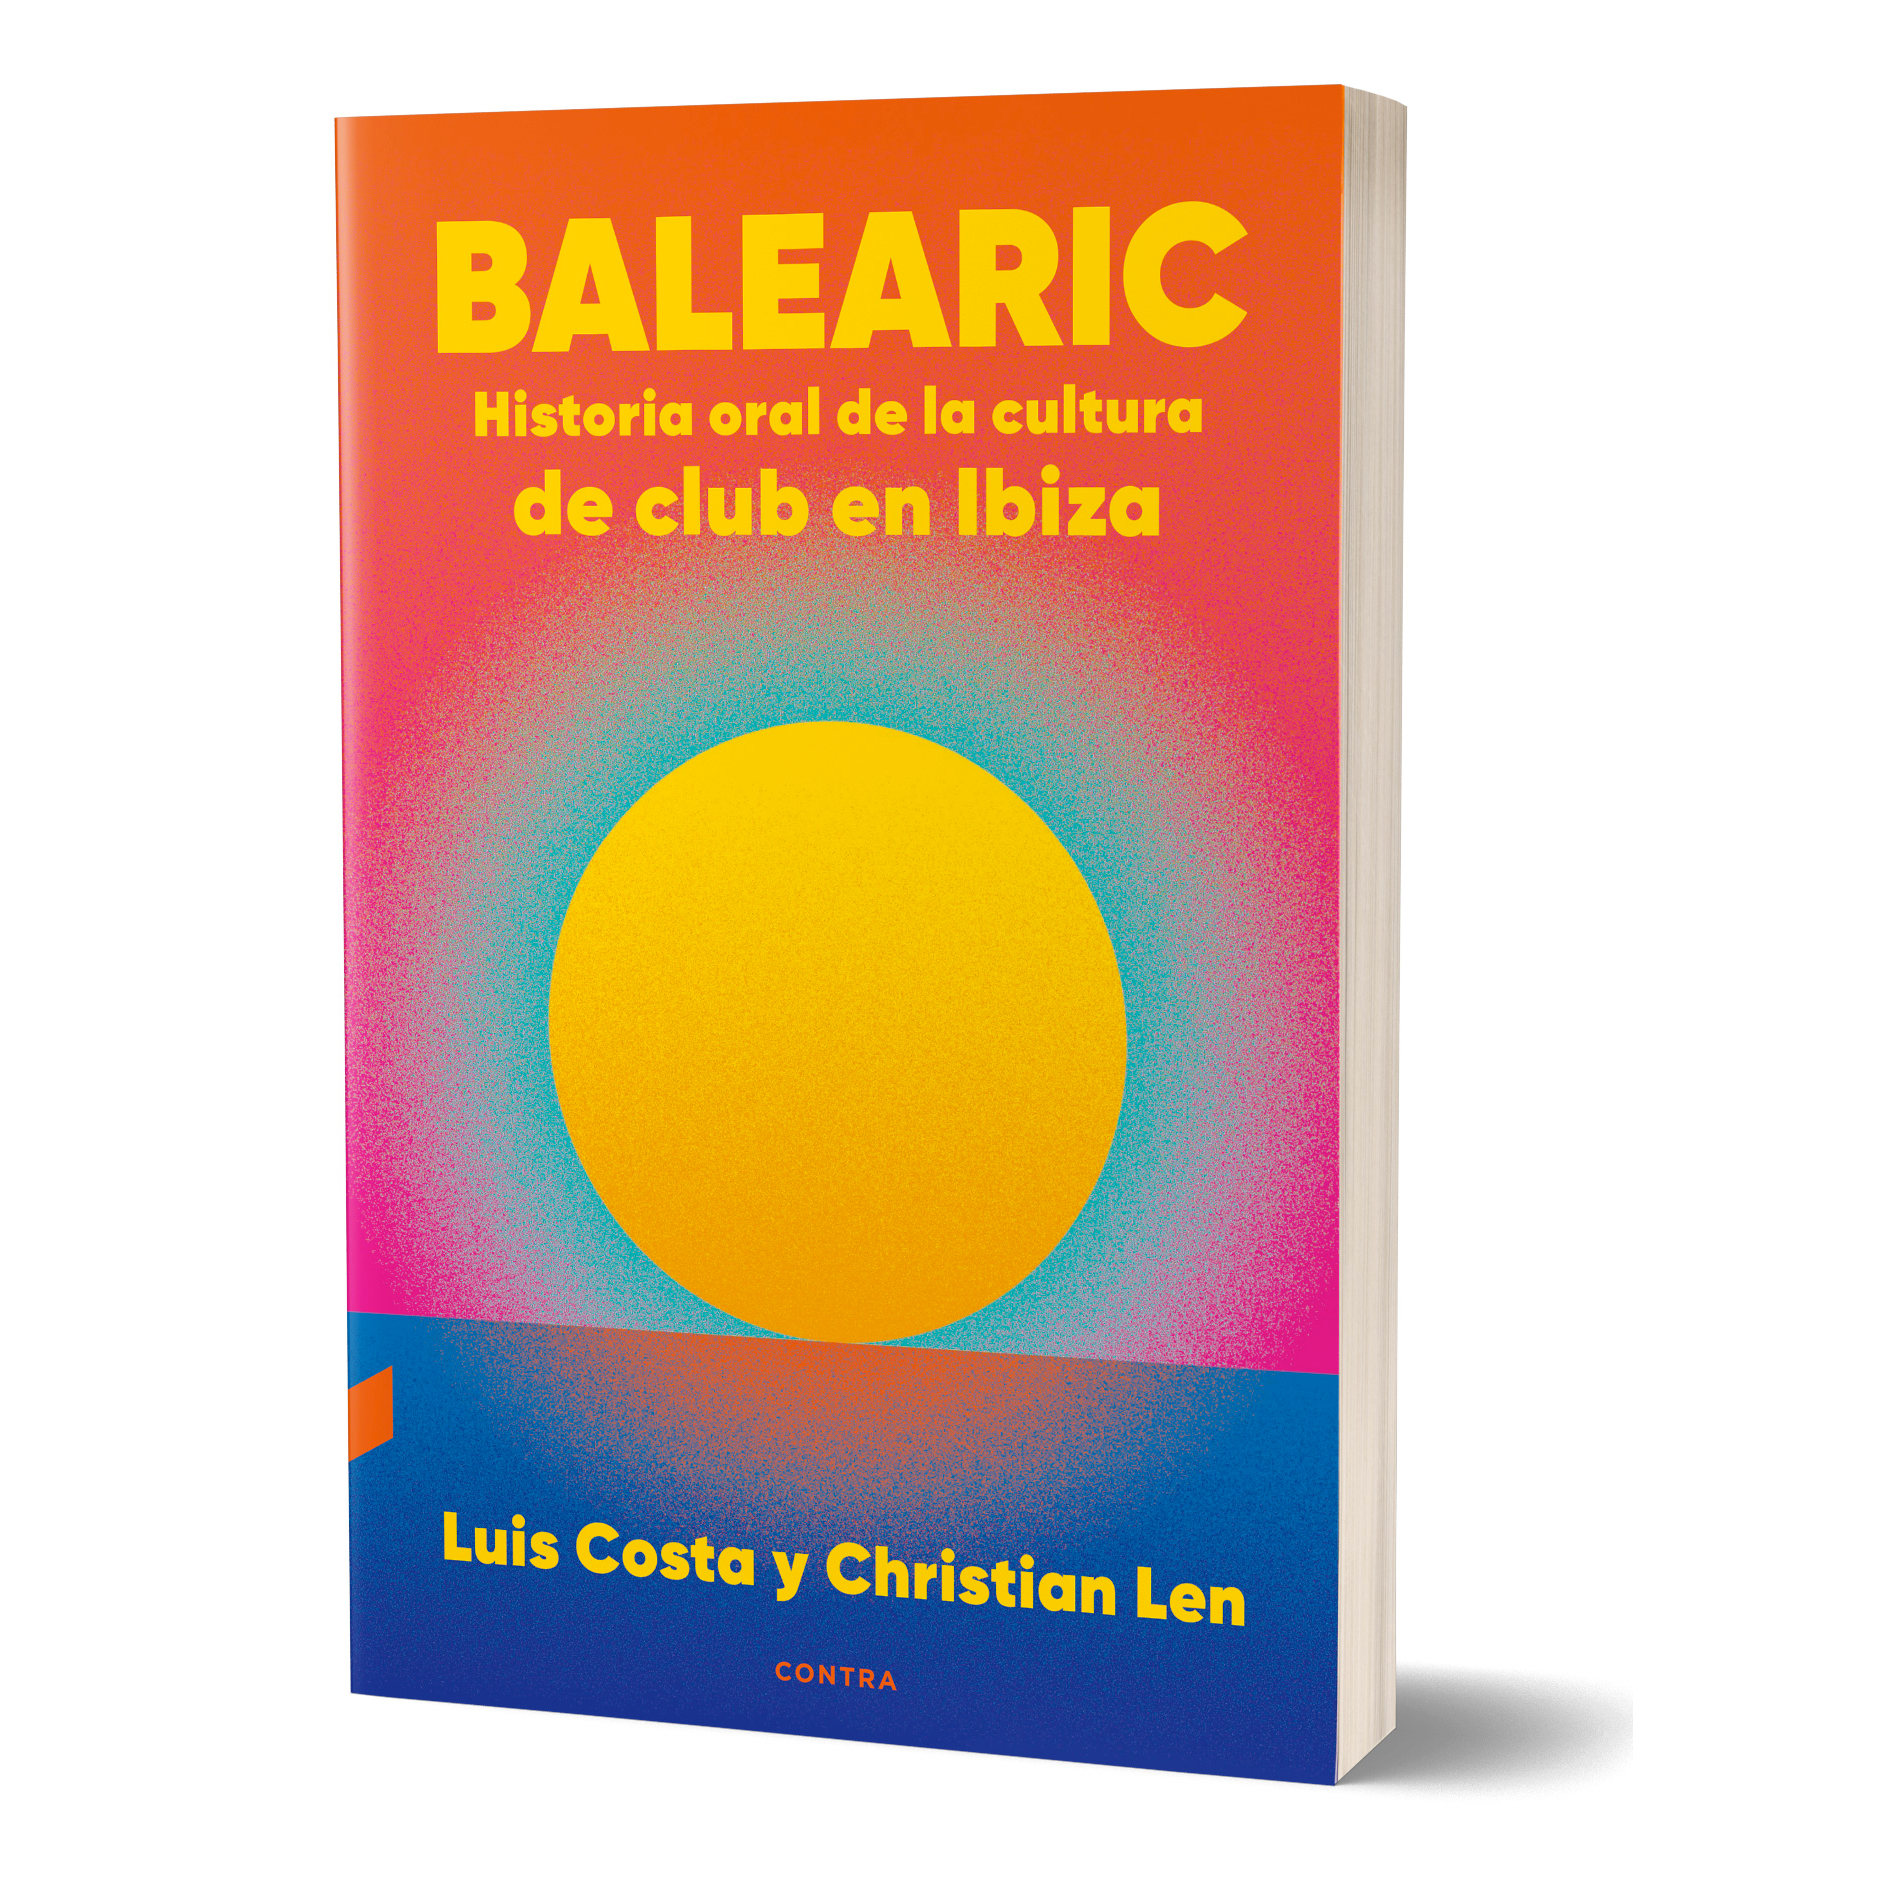 "Balearic. Historia oral de la cultura de club en Ibiza" de Luis Costa y Christian Len